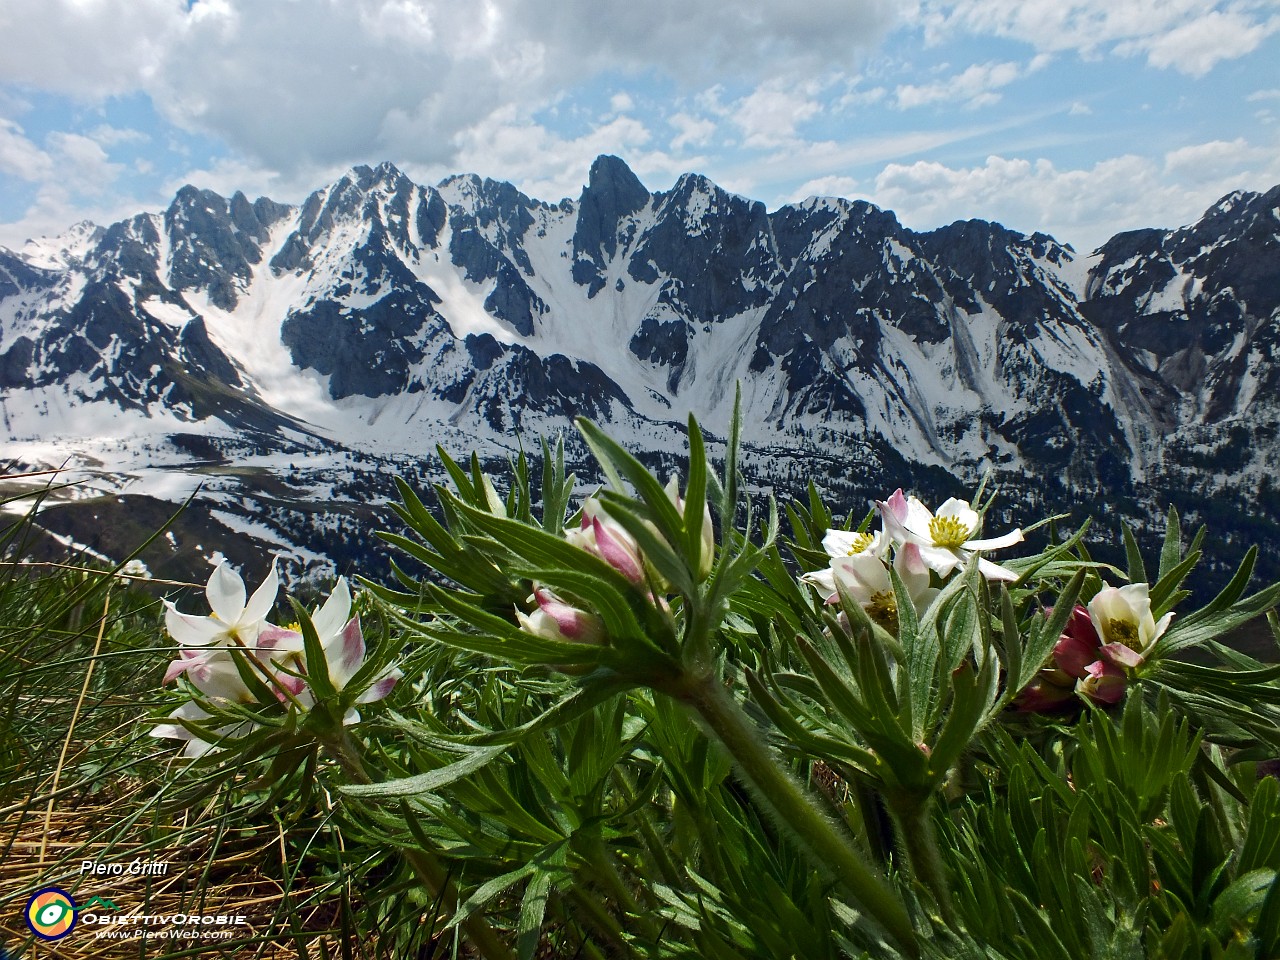 04 Anemone narcissino con vista sulle 'Piccole Dolomiti Scalvine'.JPG